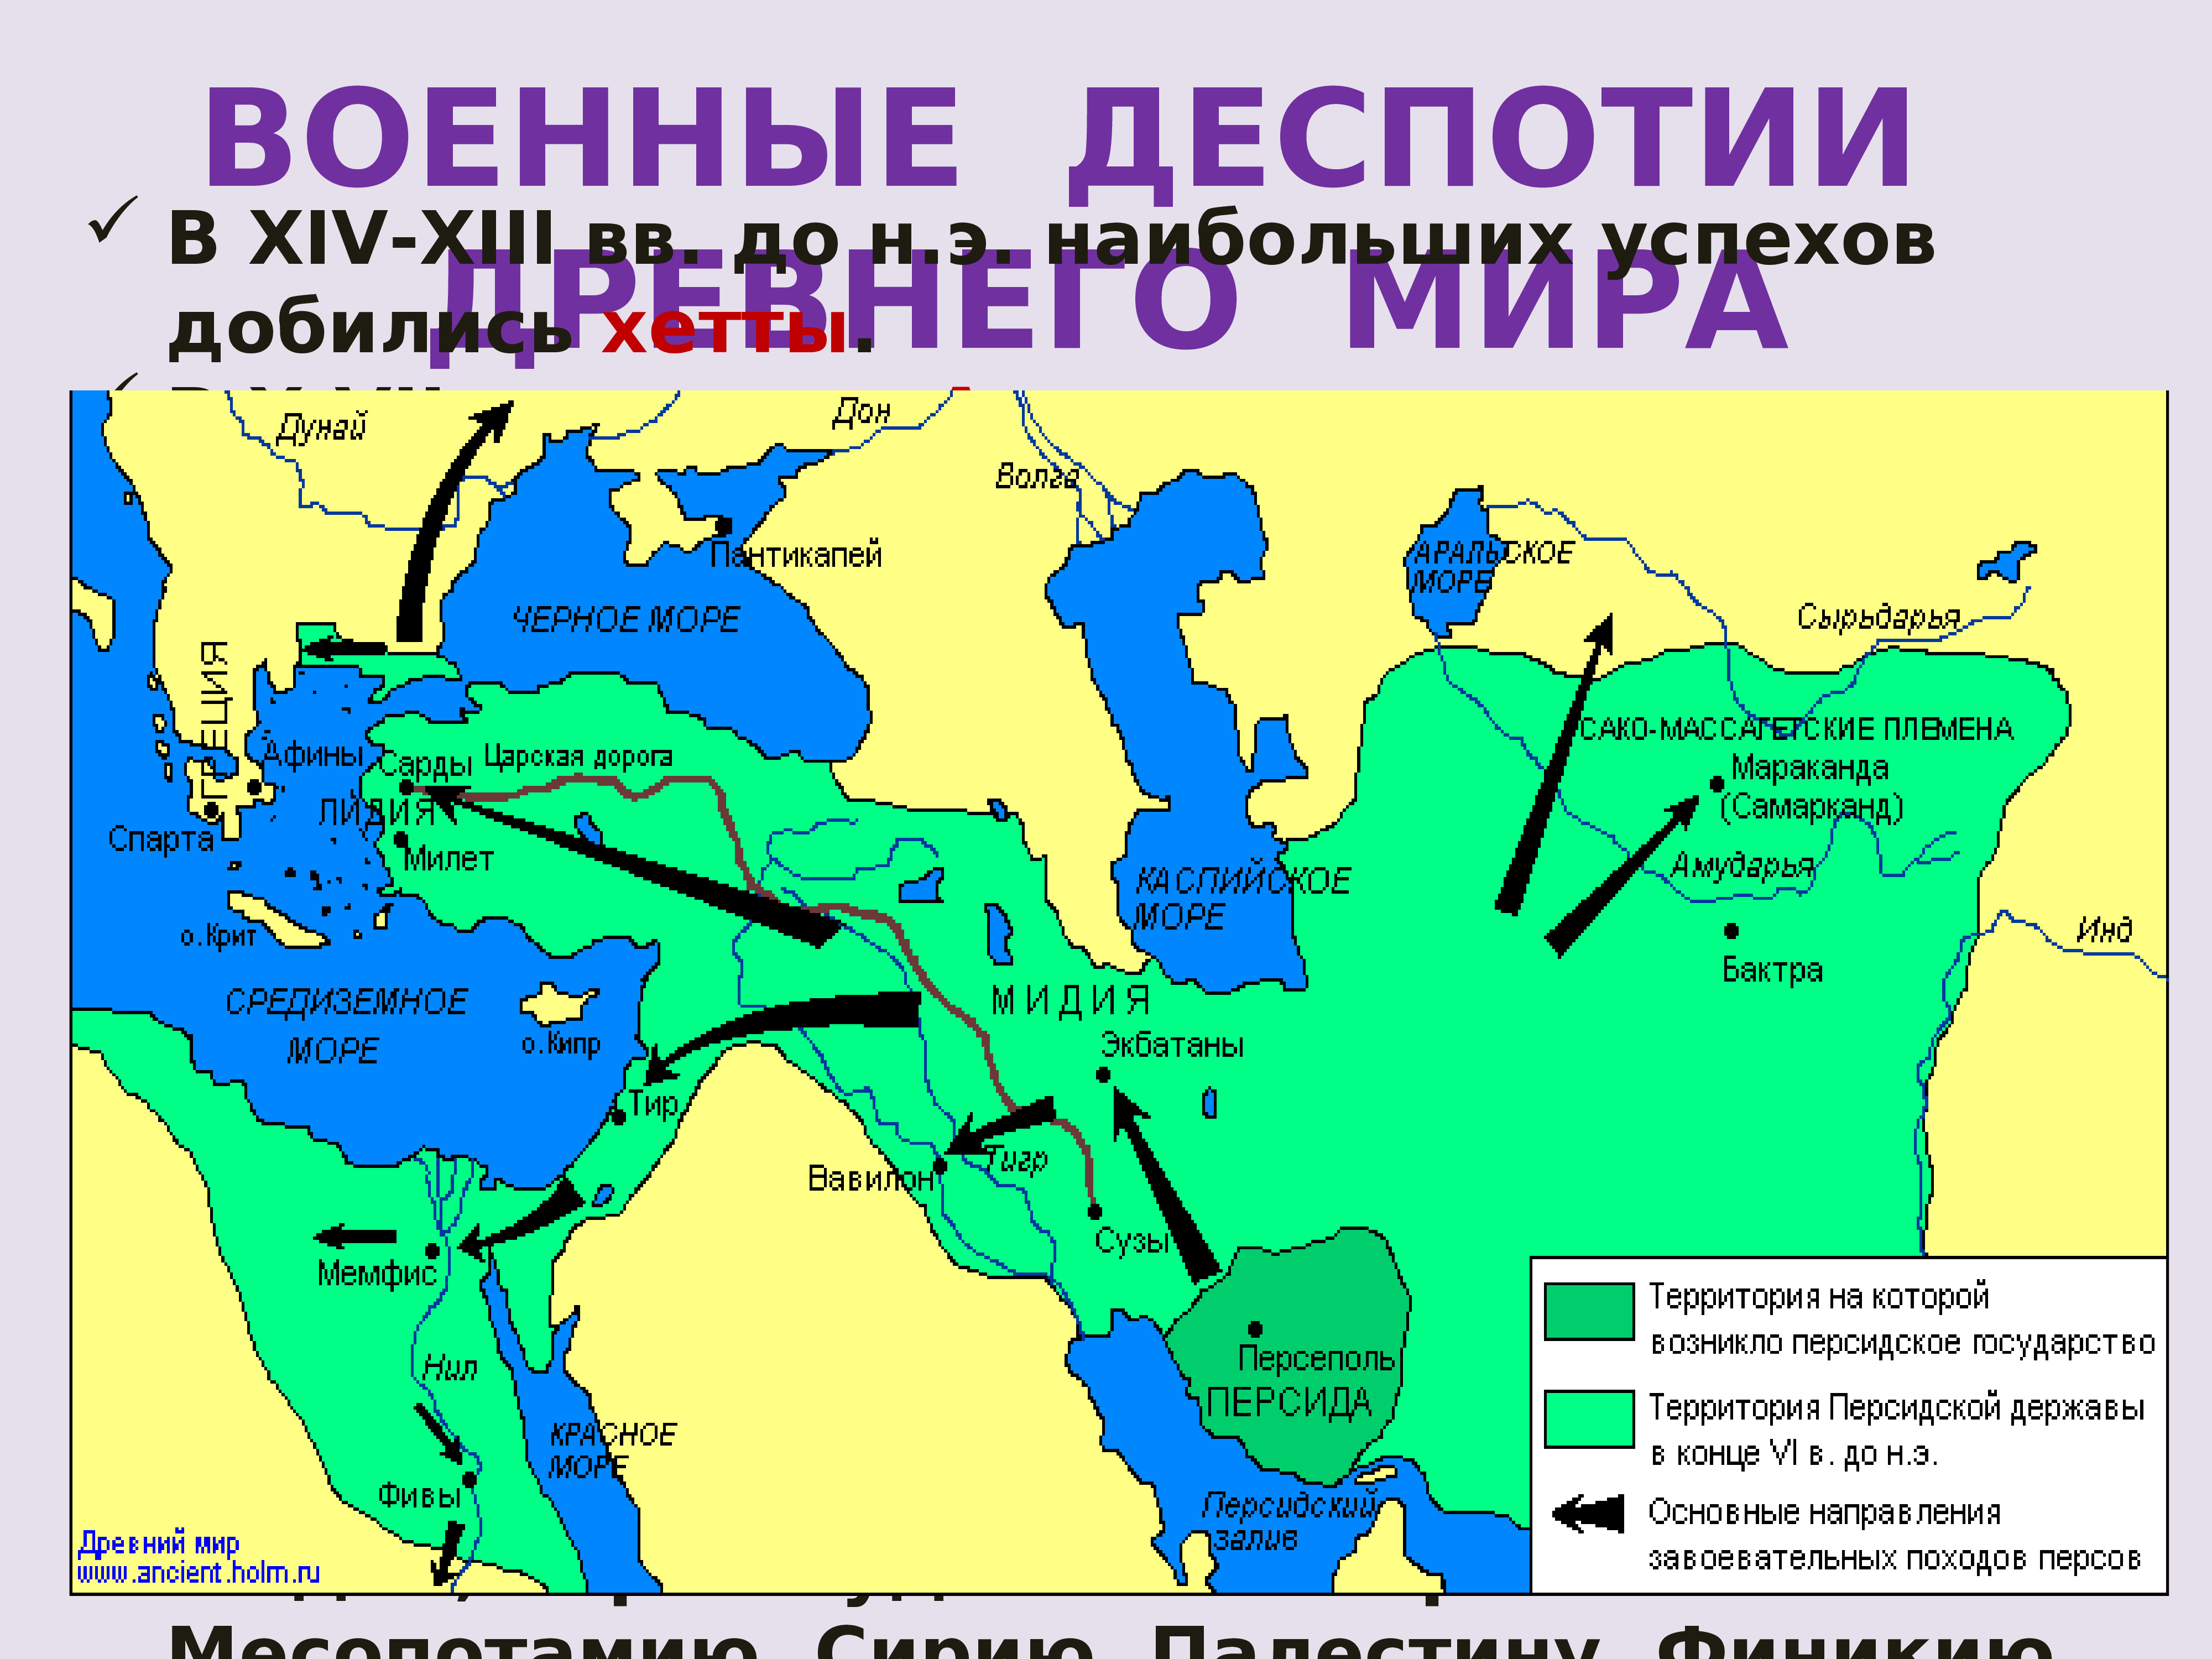 Персидская держава на карте. Территория Персии в 5 веке до н.э.